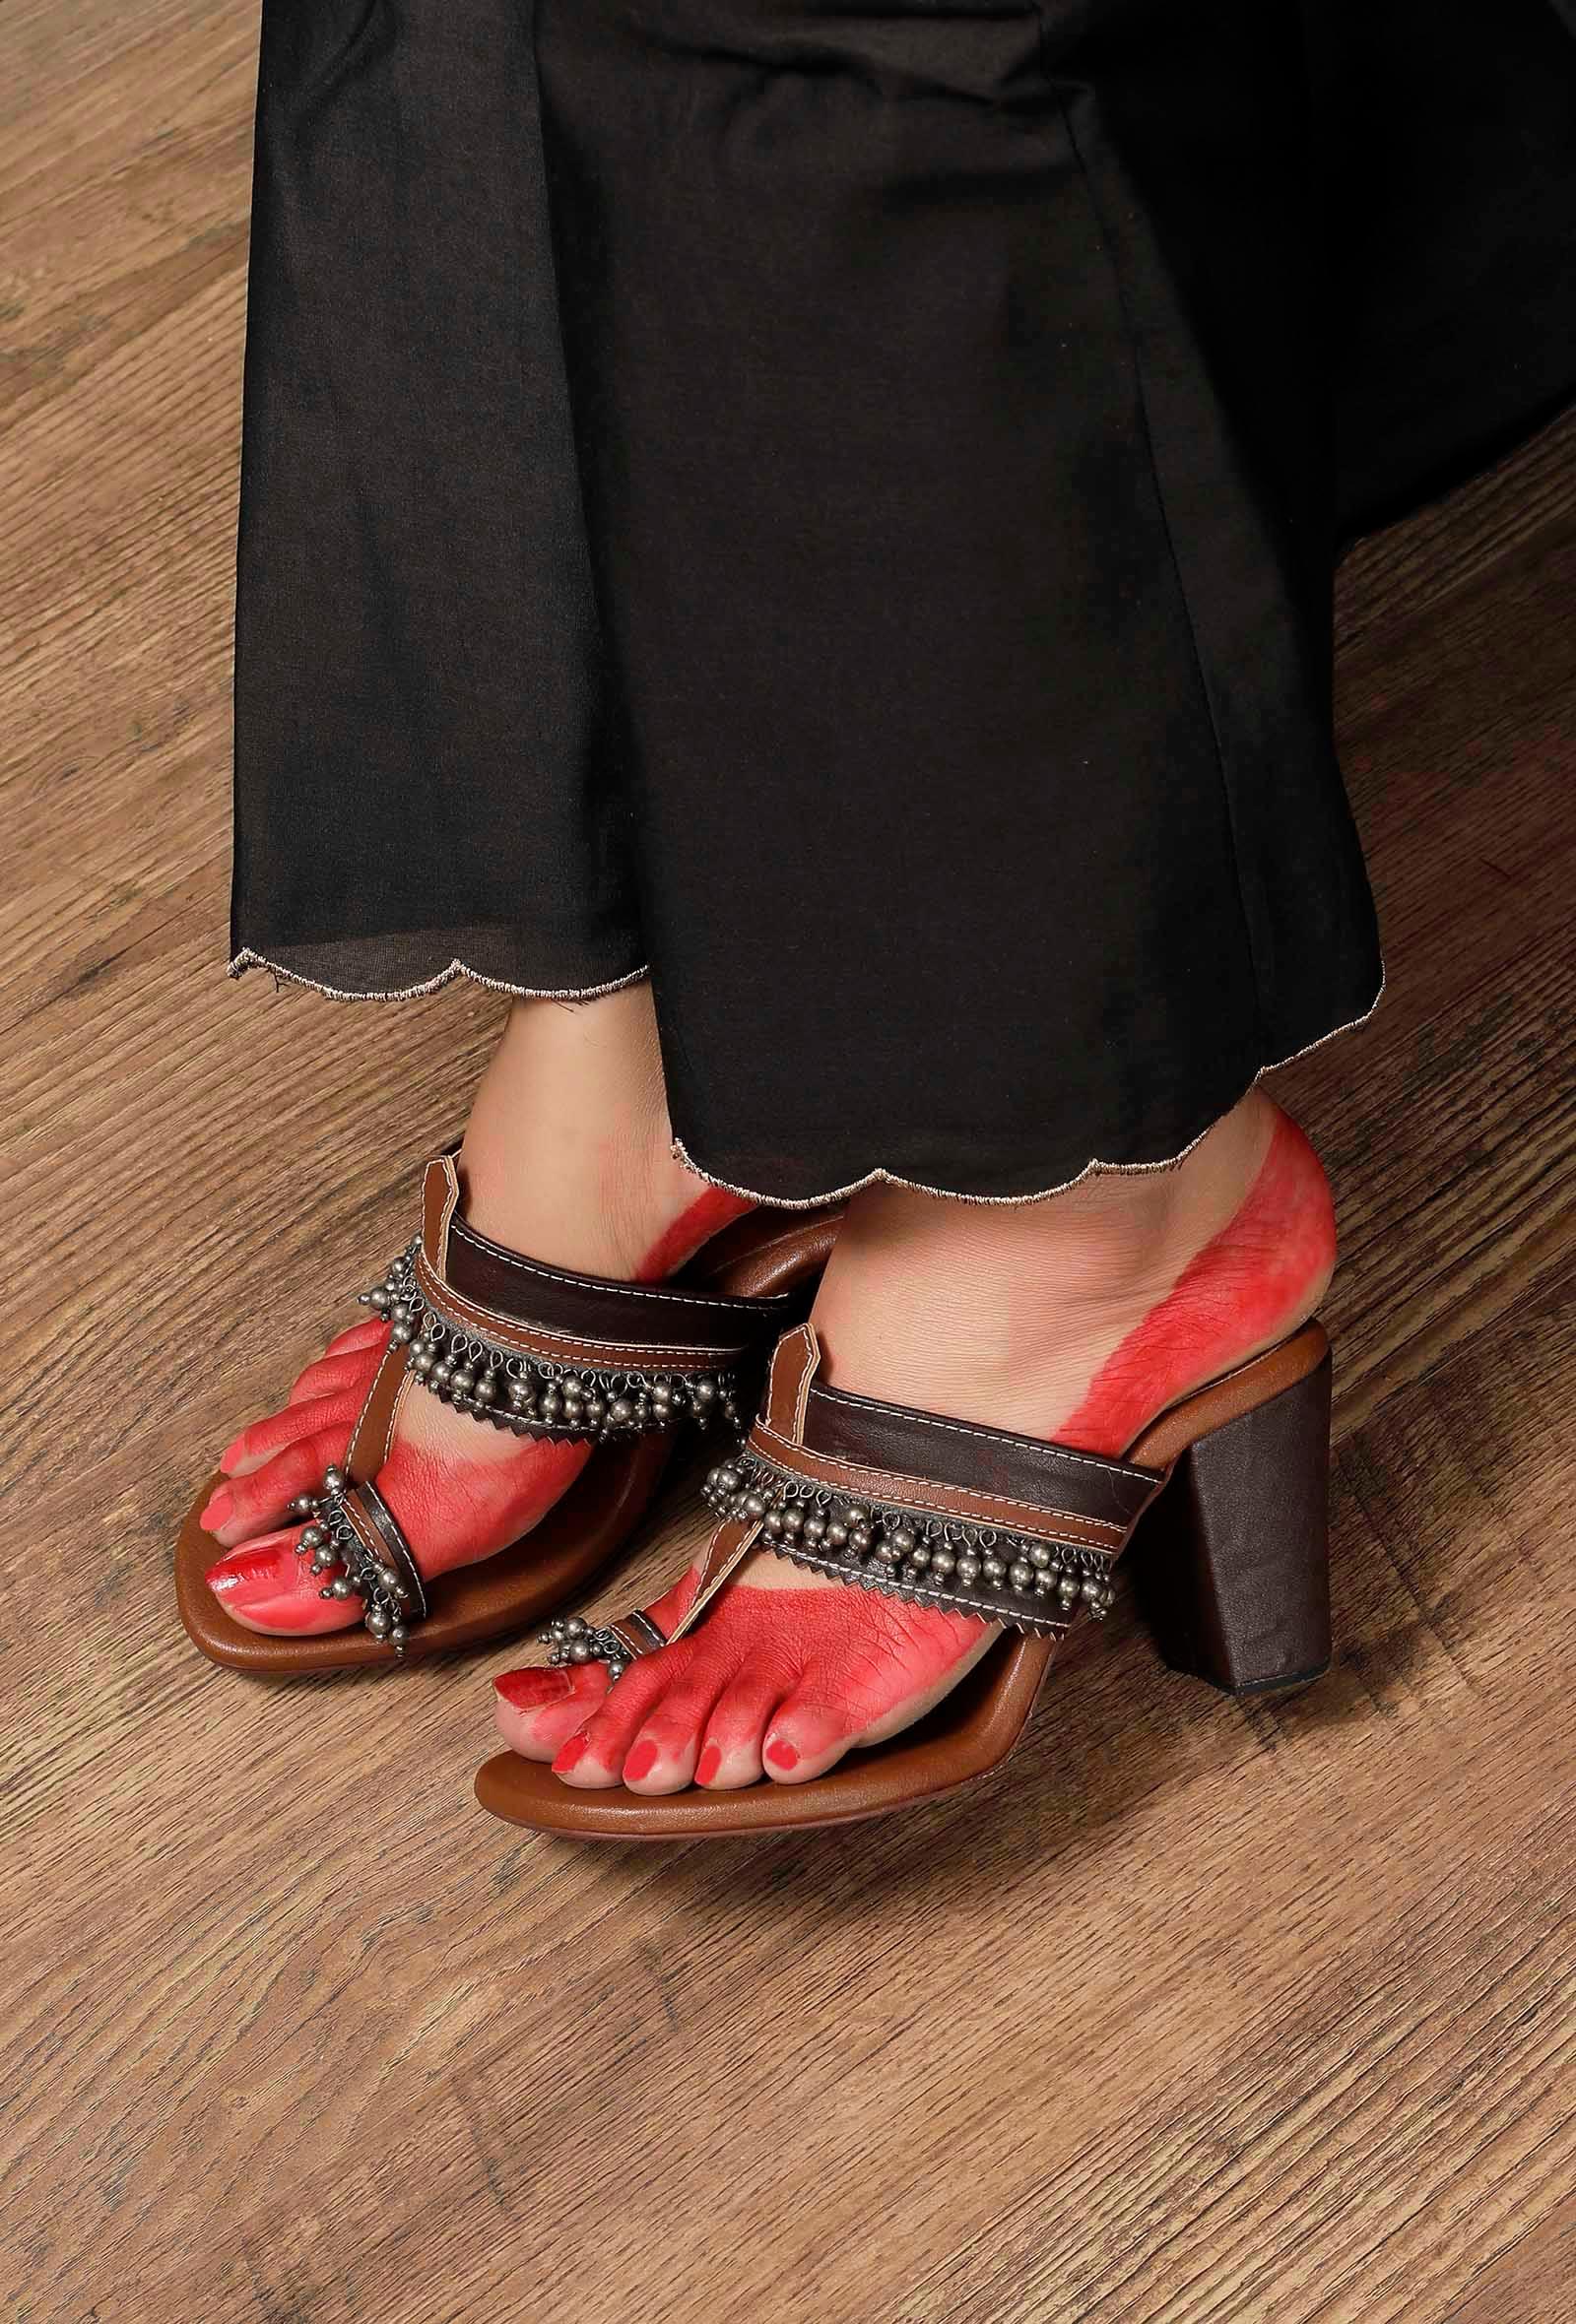 nargis-brown-ghungroo-tribal-heels